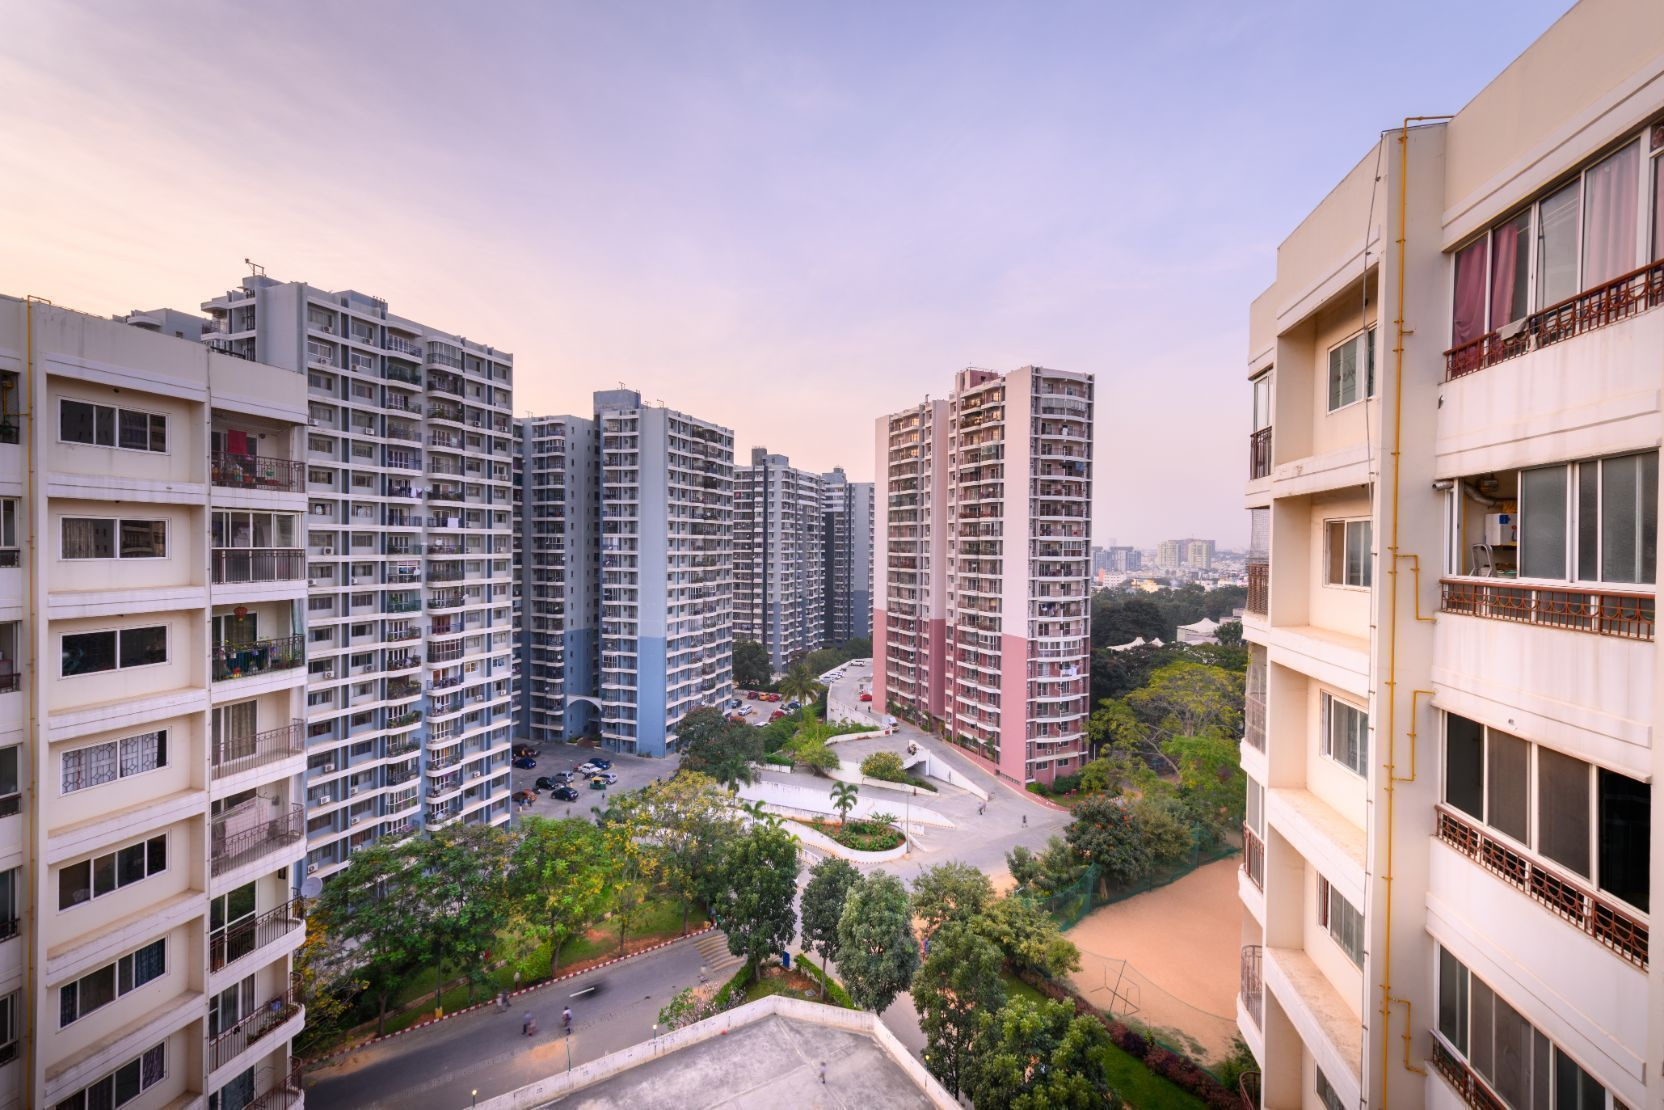 ब्रिगेड बेंगलुरु में आवासीय परियोजना विकसित करेगी